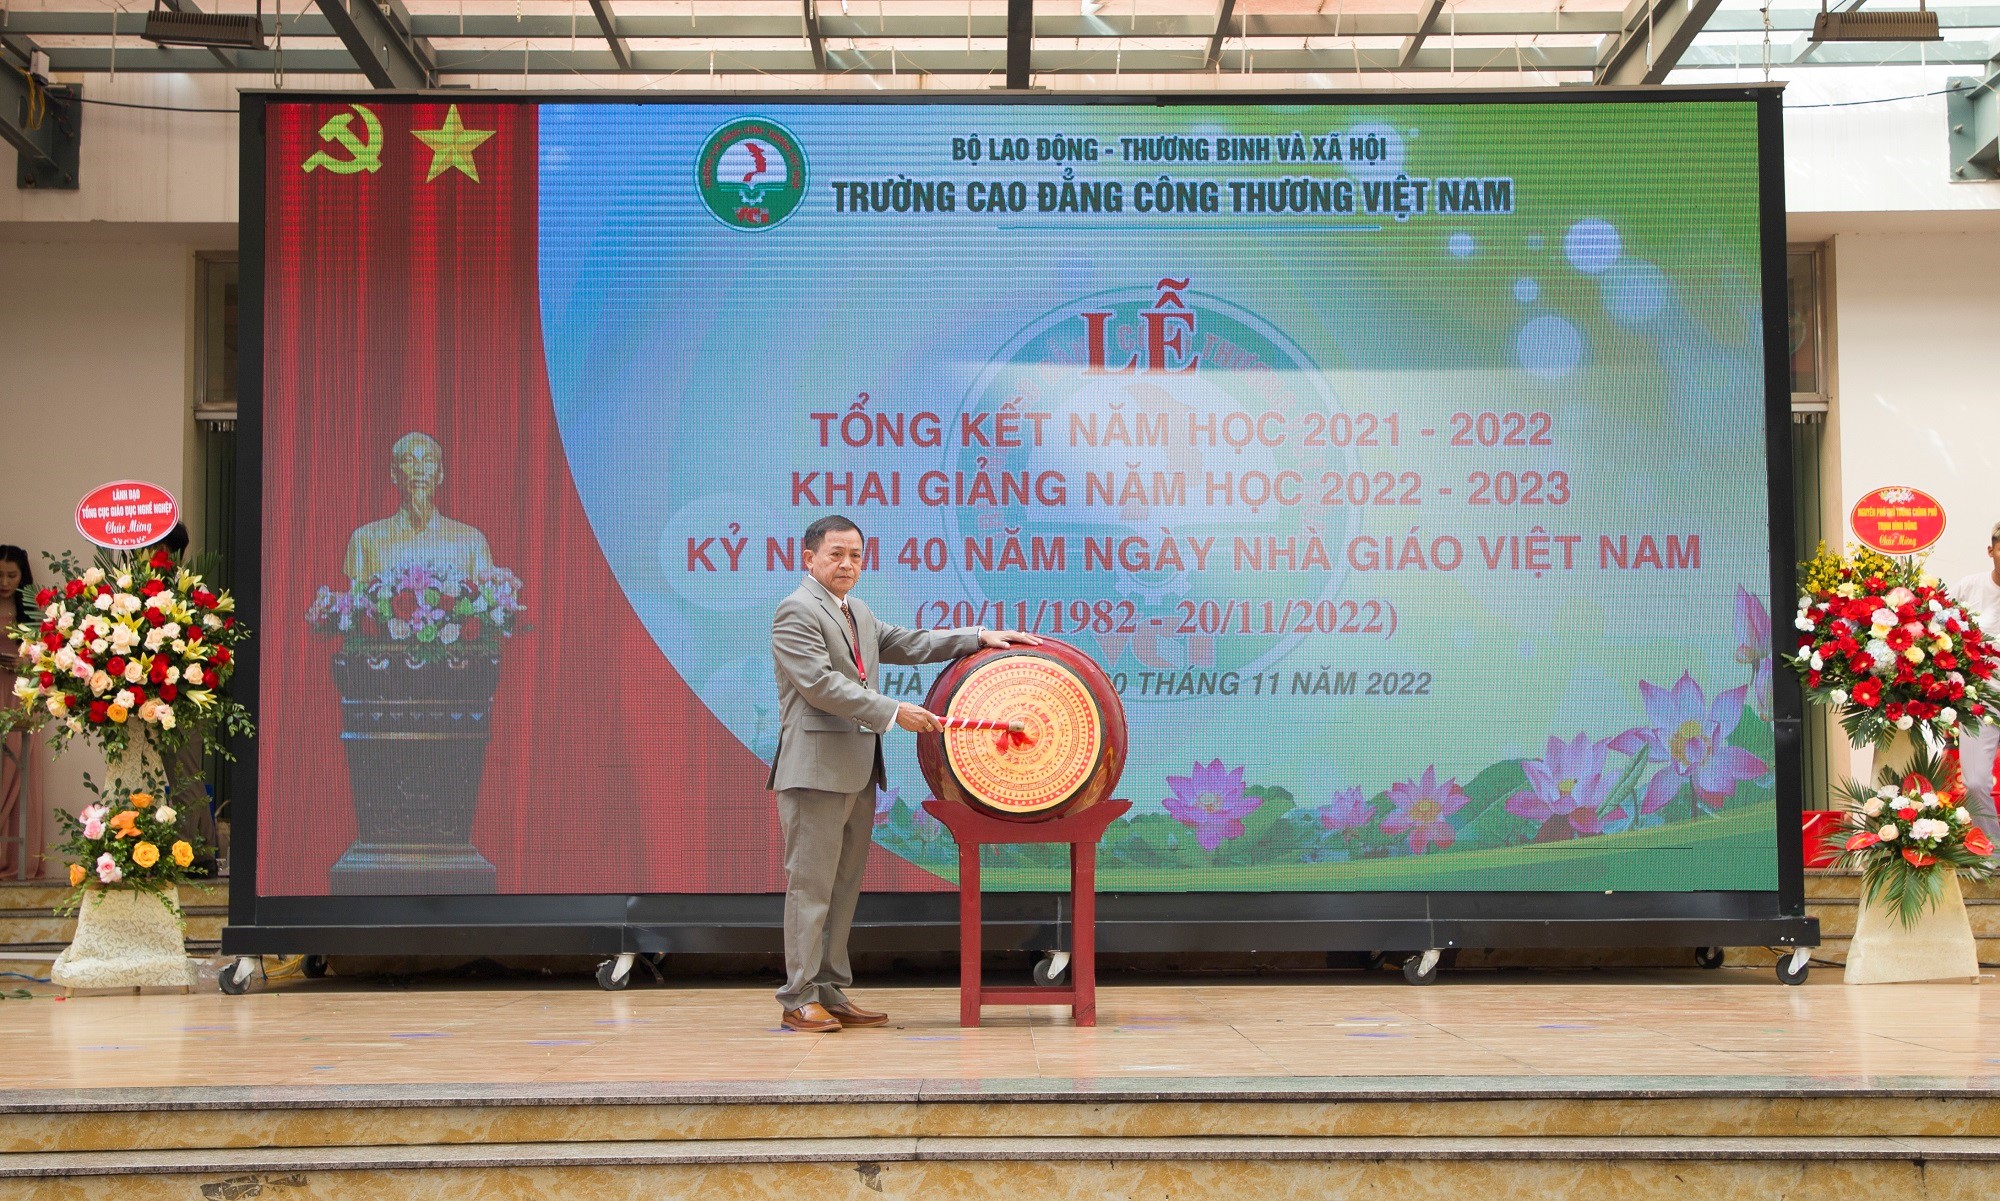 Trường Cao đẳng Công thương Việt Nam: Tiếp tục đổi mới, khẳng định niềm tin của nhân dân